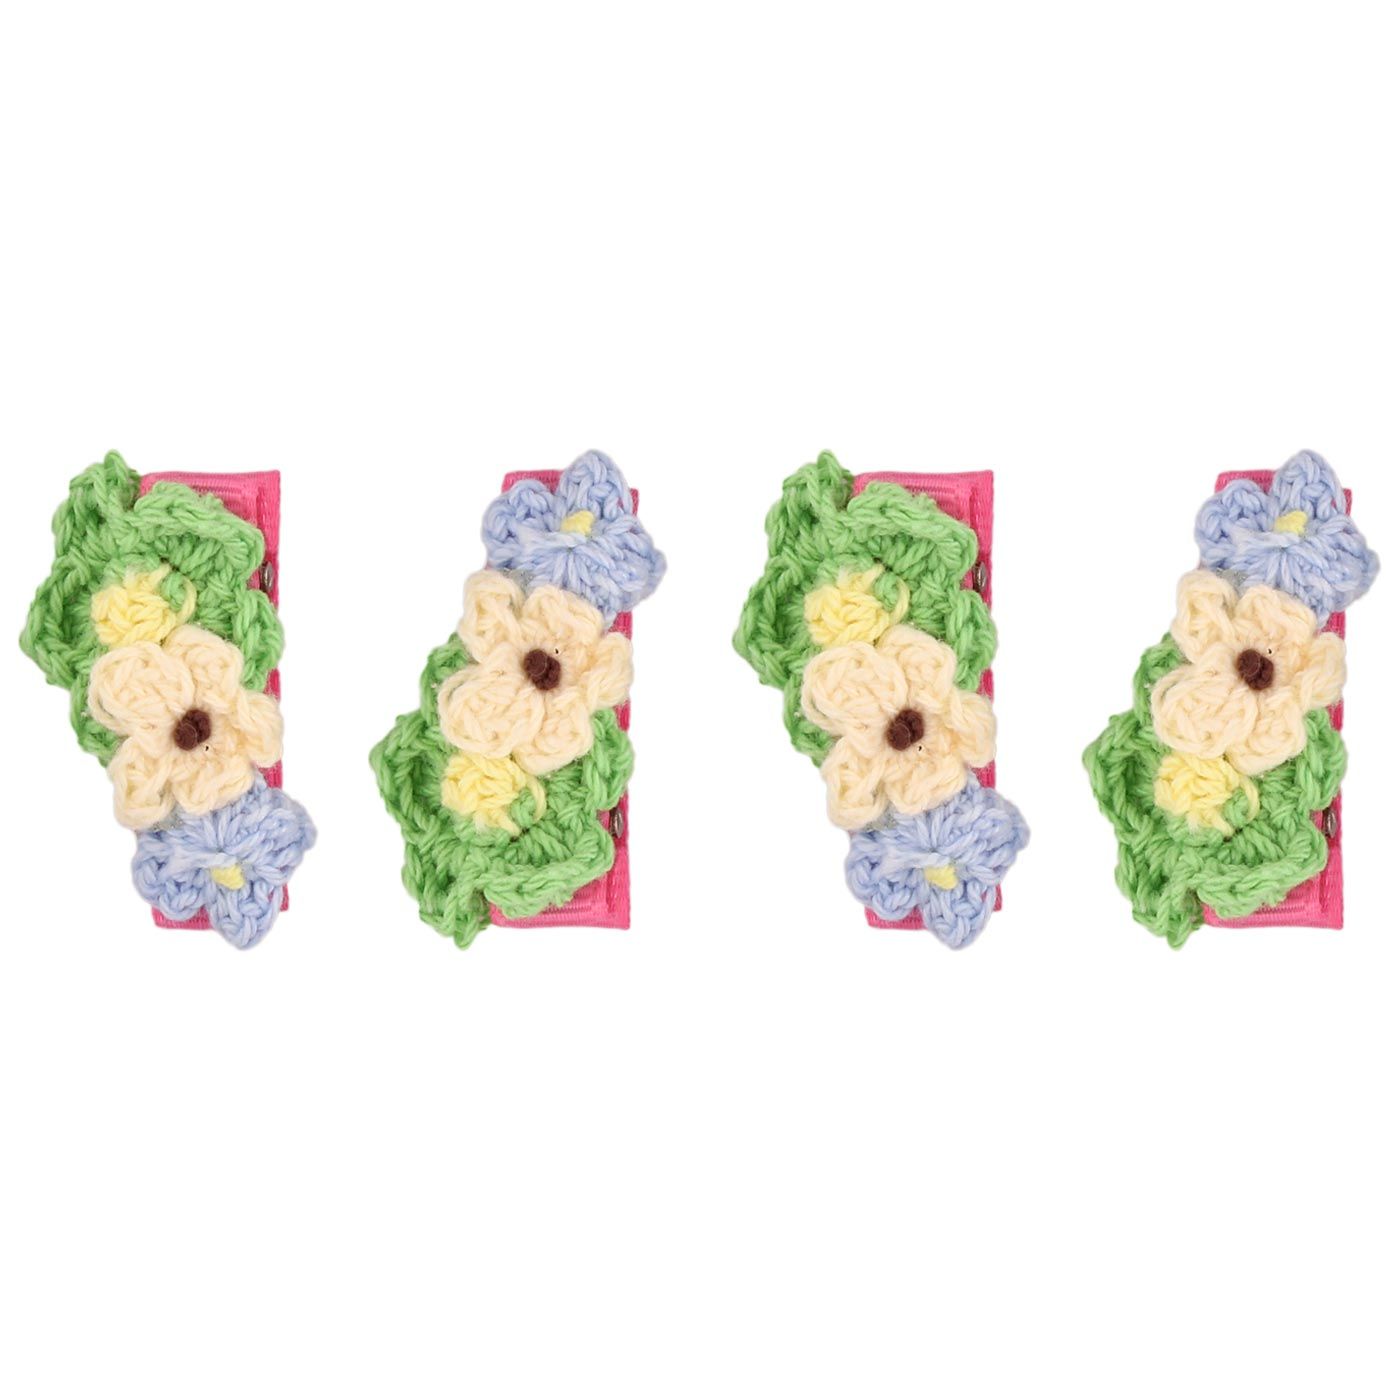 Bebecroc Crochet Flower Clips(2pcs)Green+Cream+Light Blue - 2